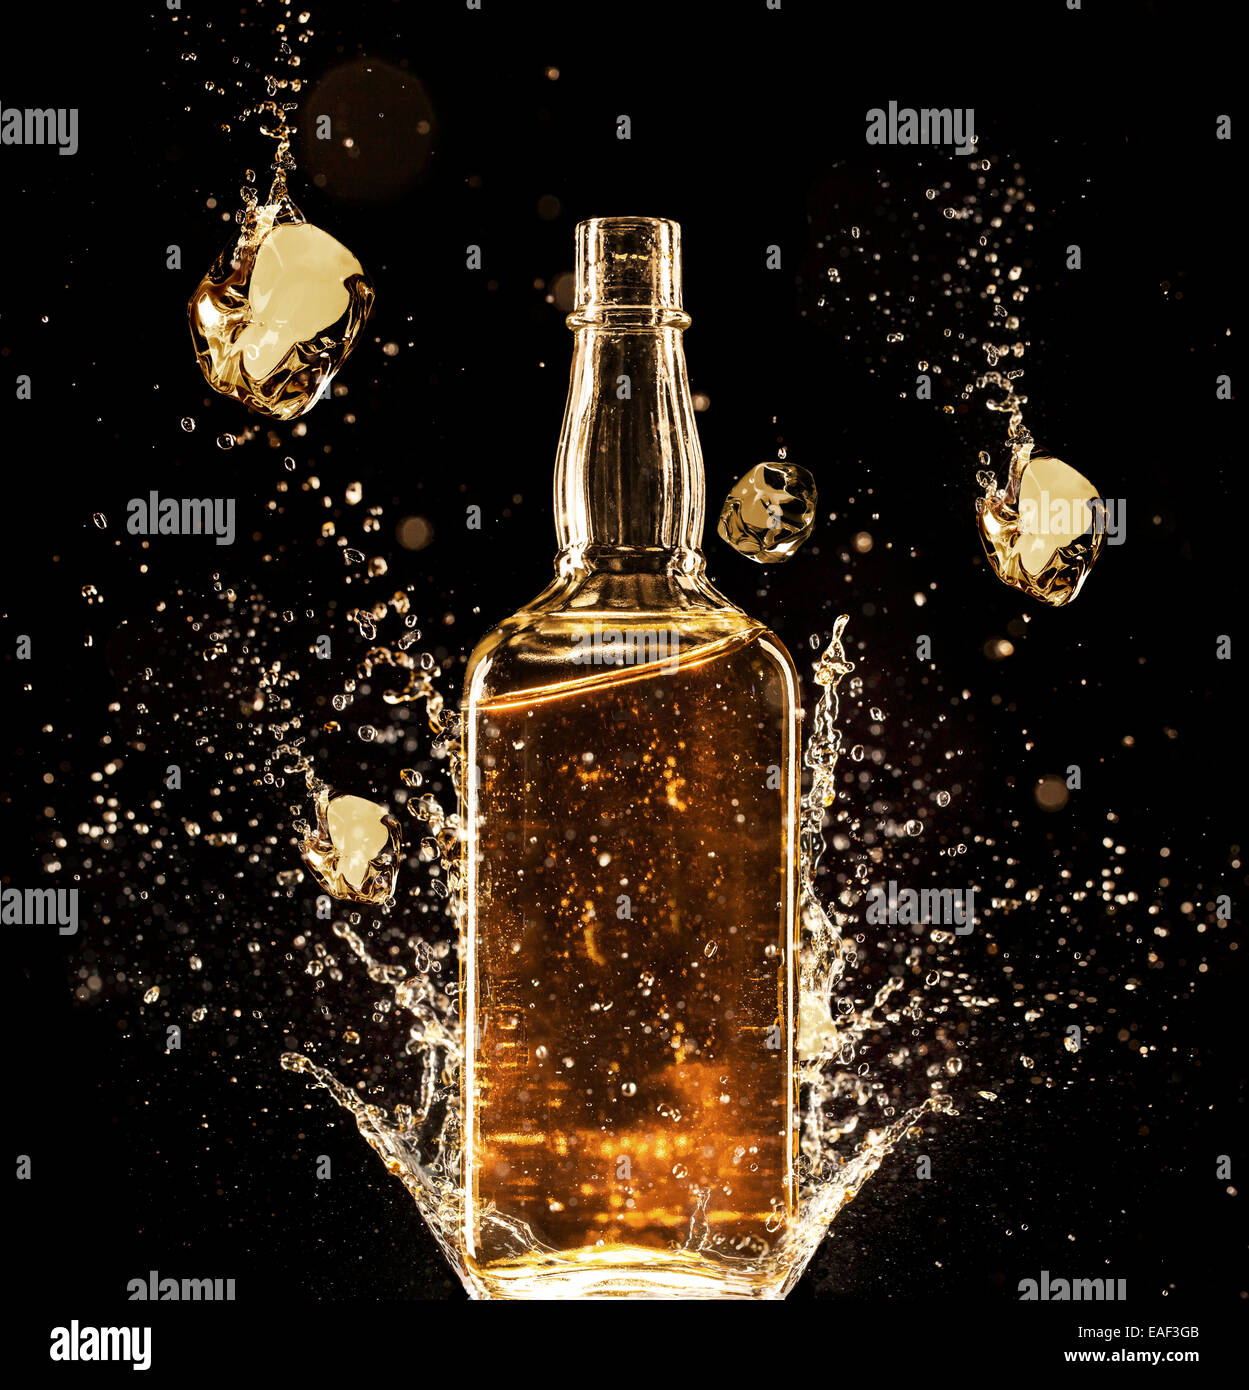 Concept of liquor splashing around bottle, isolated on black background Stock Photo